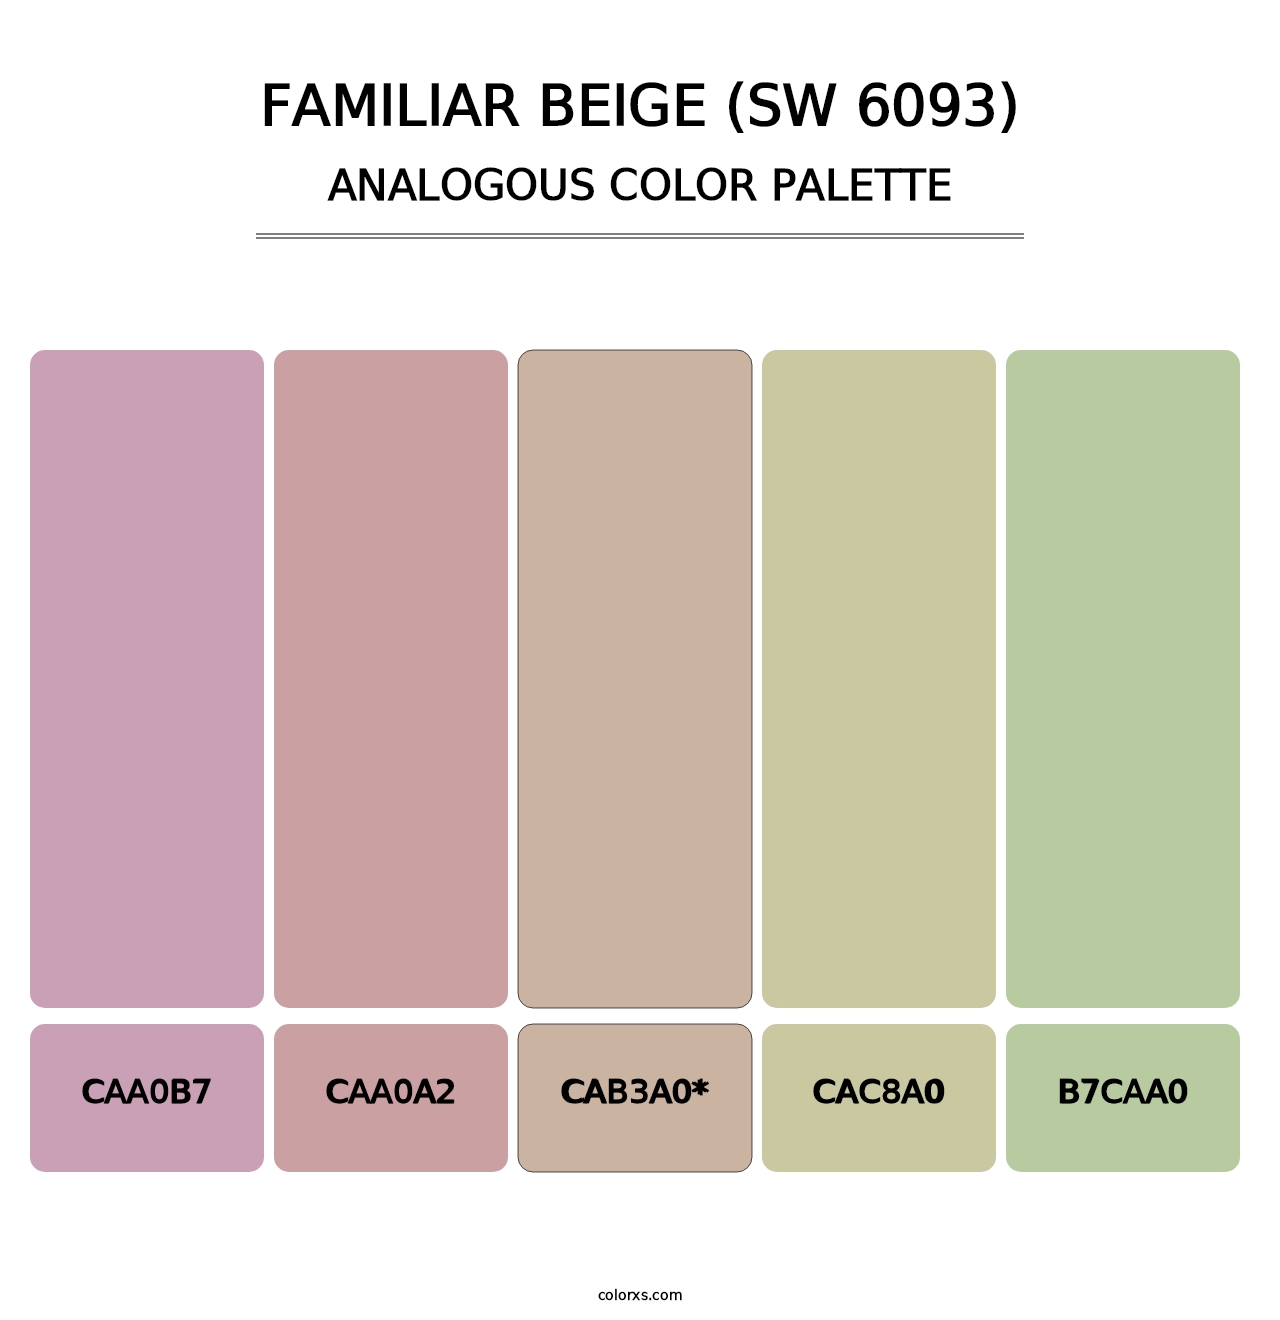 Familiar Beige (SW 6093) - Analogous Color Palette